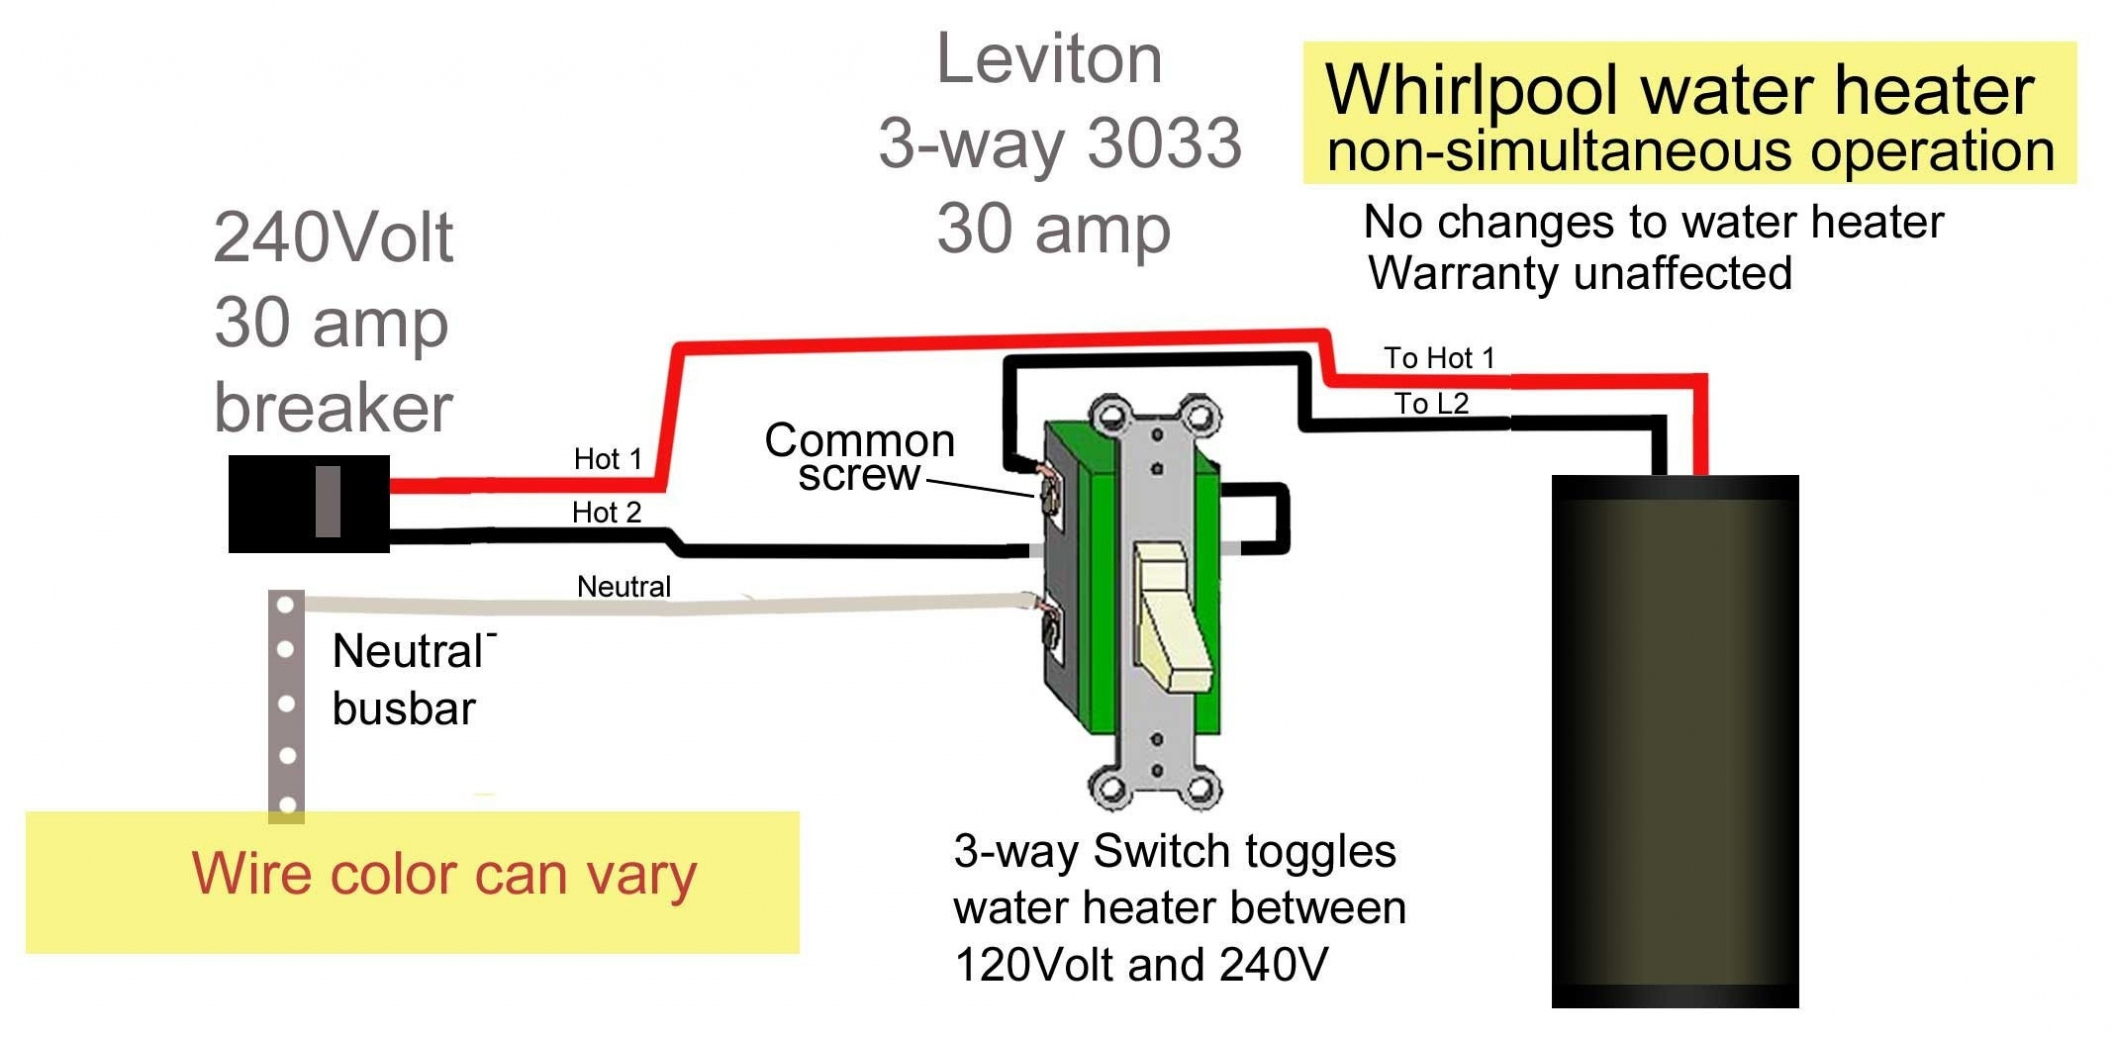 Lighted Rocker Switch Wiring Diagram 120V | Wiring Diagram - Lighted Rocker Switch Wiring Diagram 120V